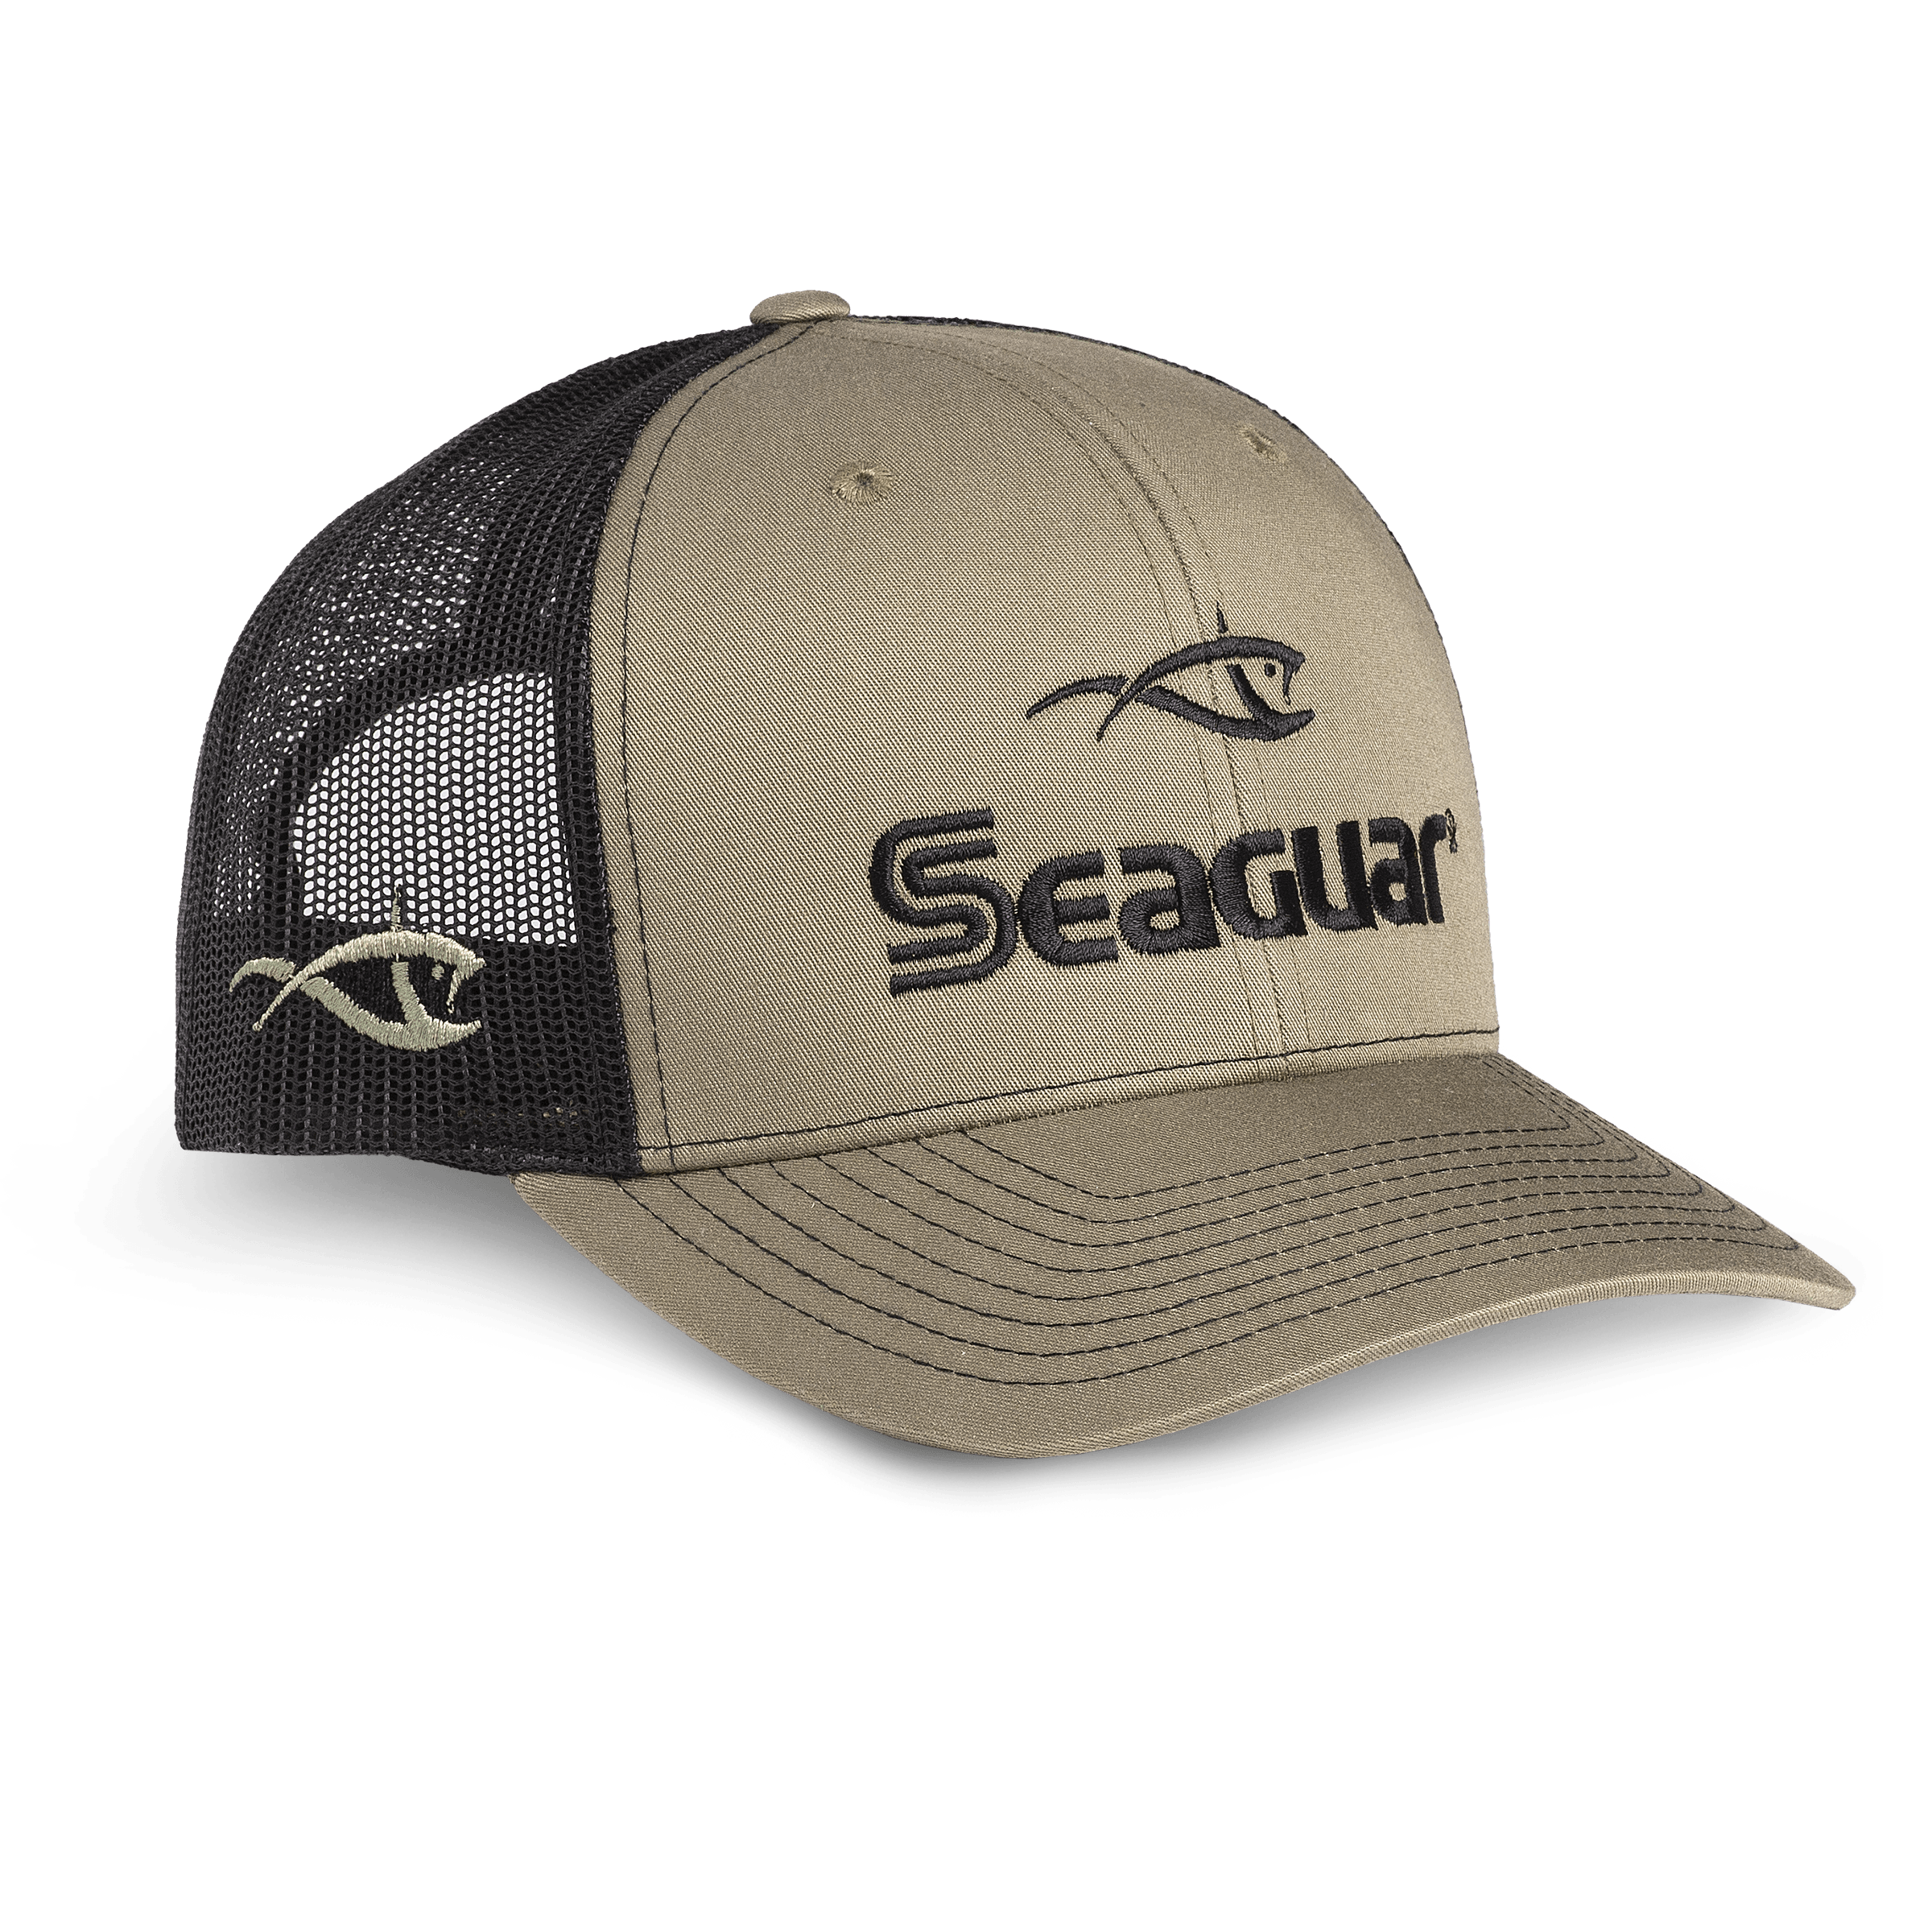 http://seaguar.com/cdn/shop/products/Seaguar_gear_hat-tan.png?v=1654618951